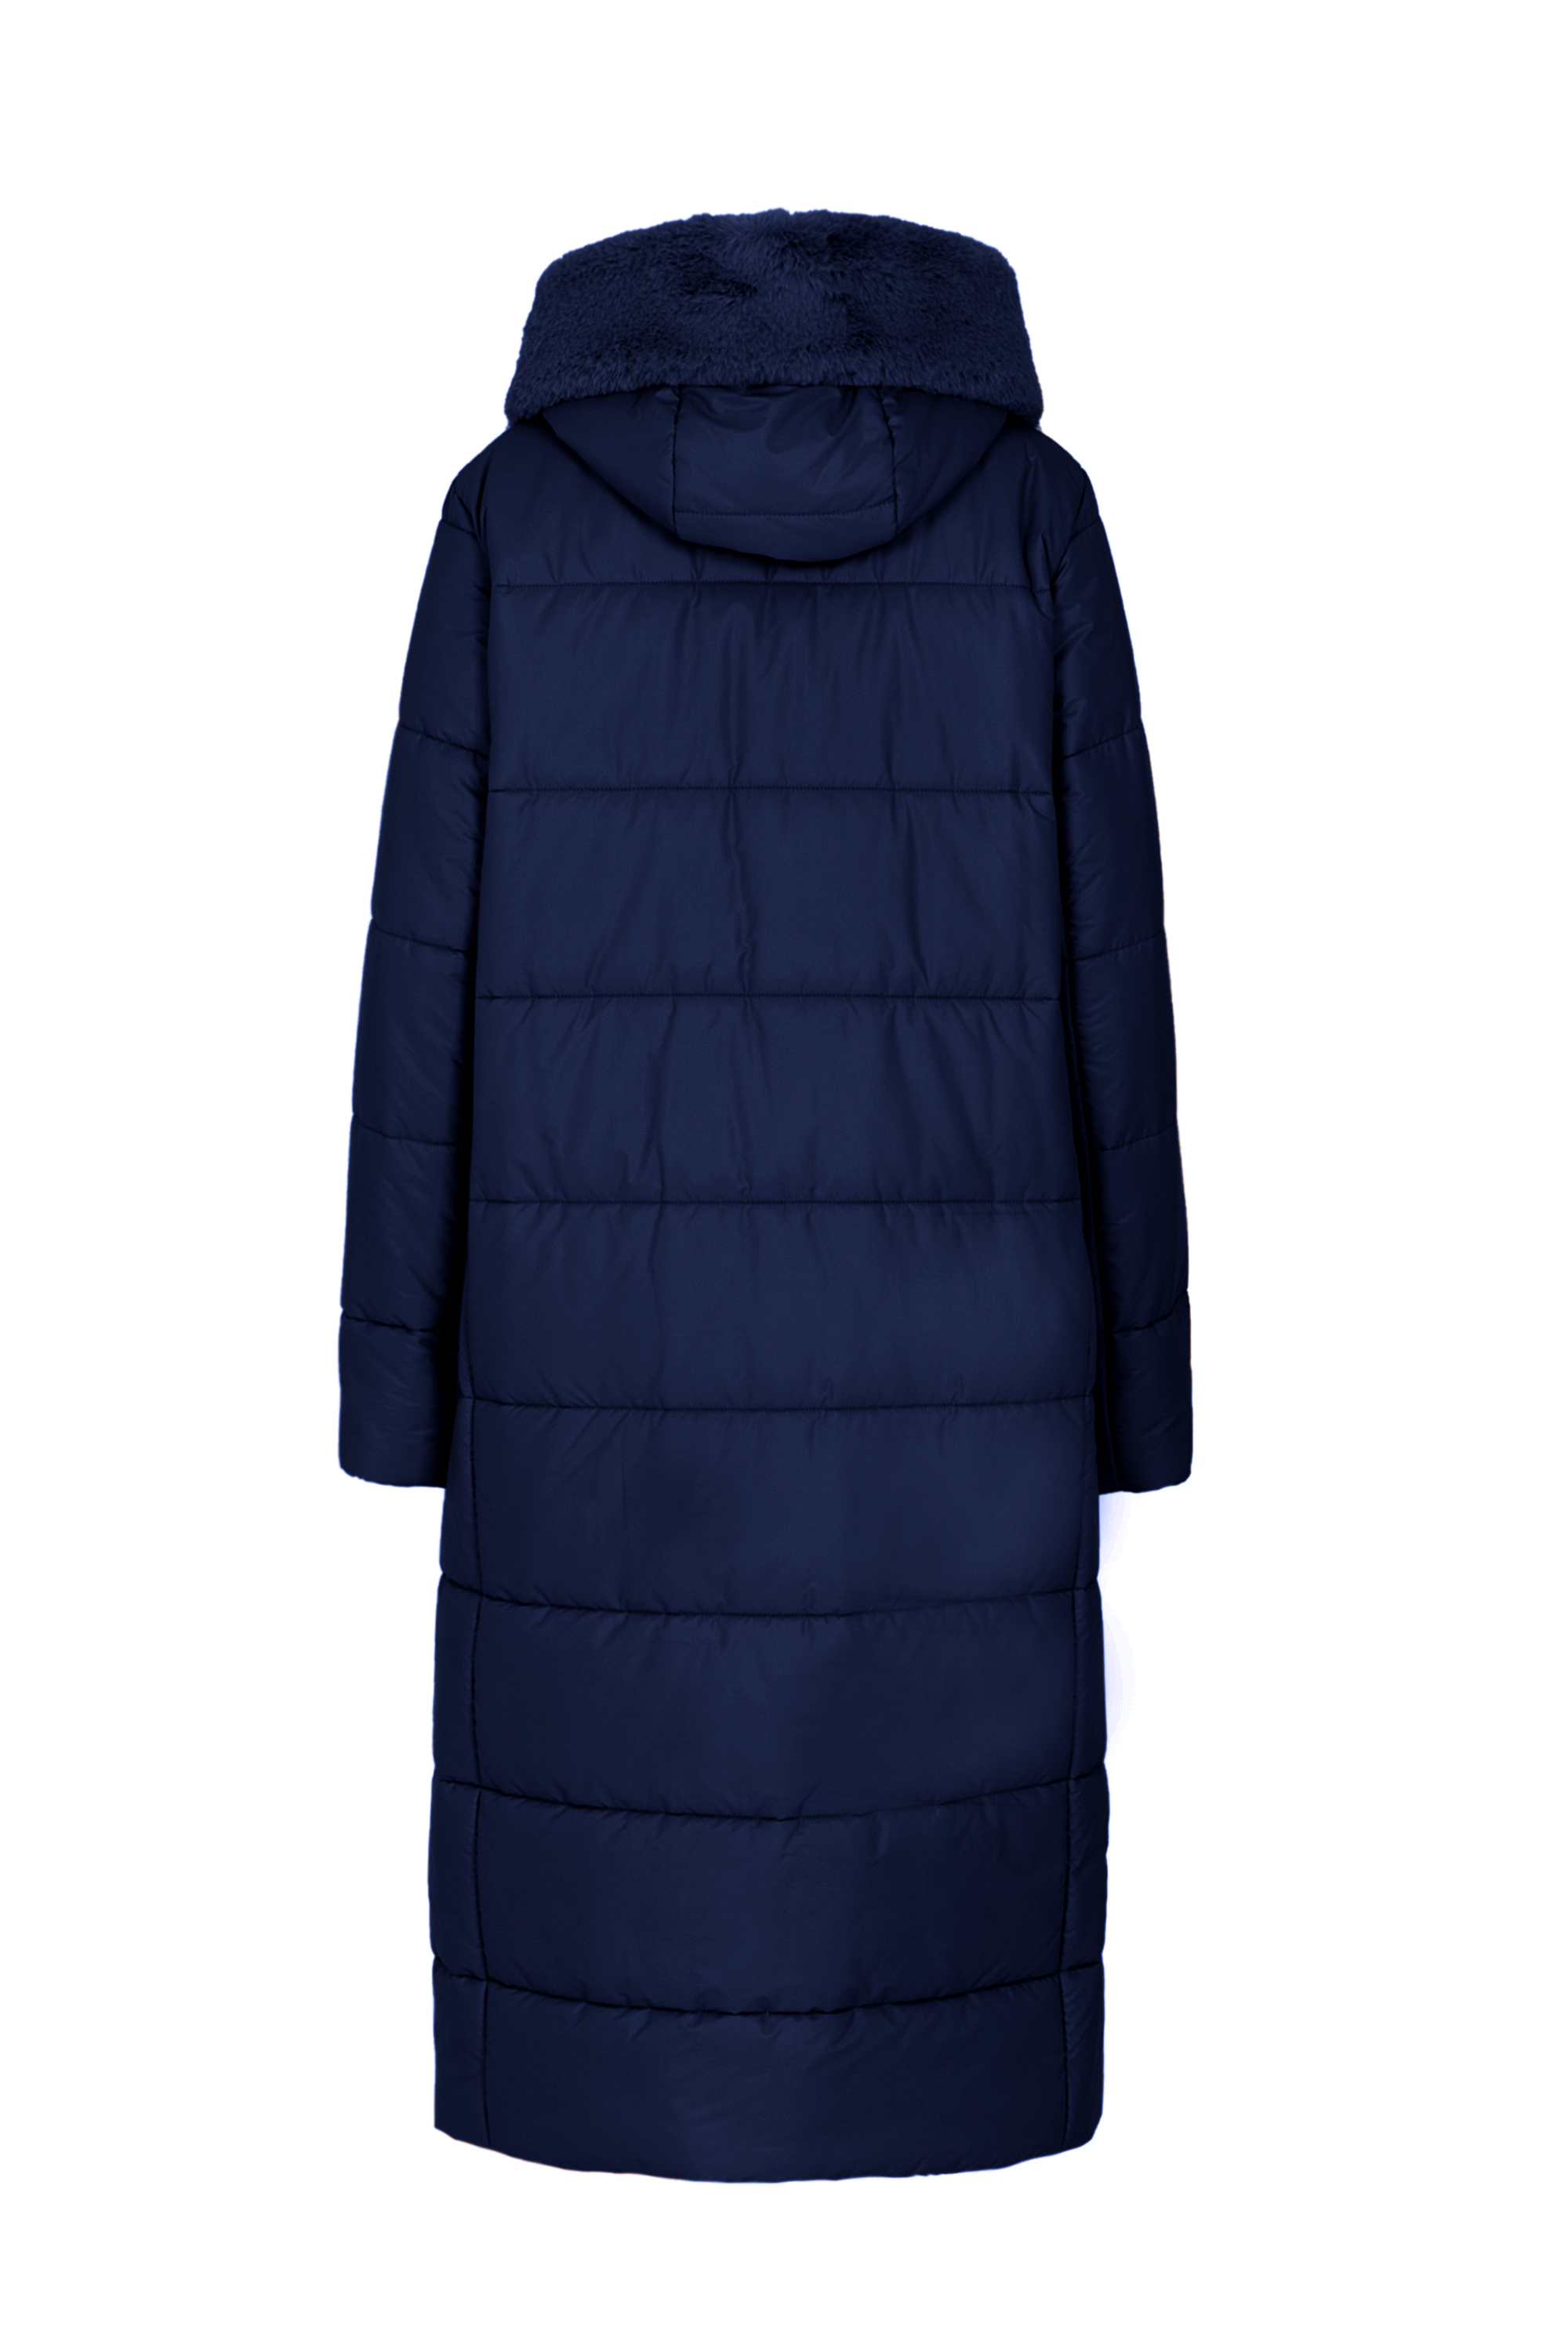 Пальто женское плащевое утепленное 5S-13062-1. Фото 3.